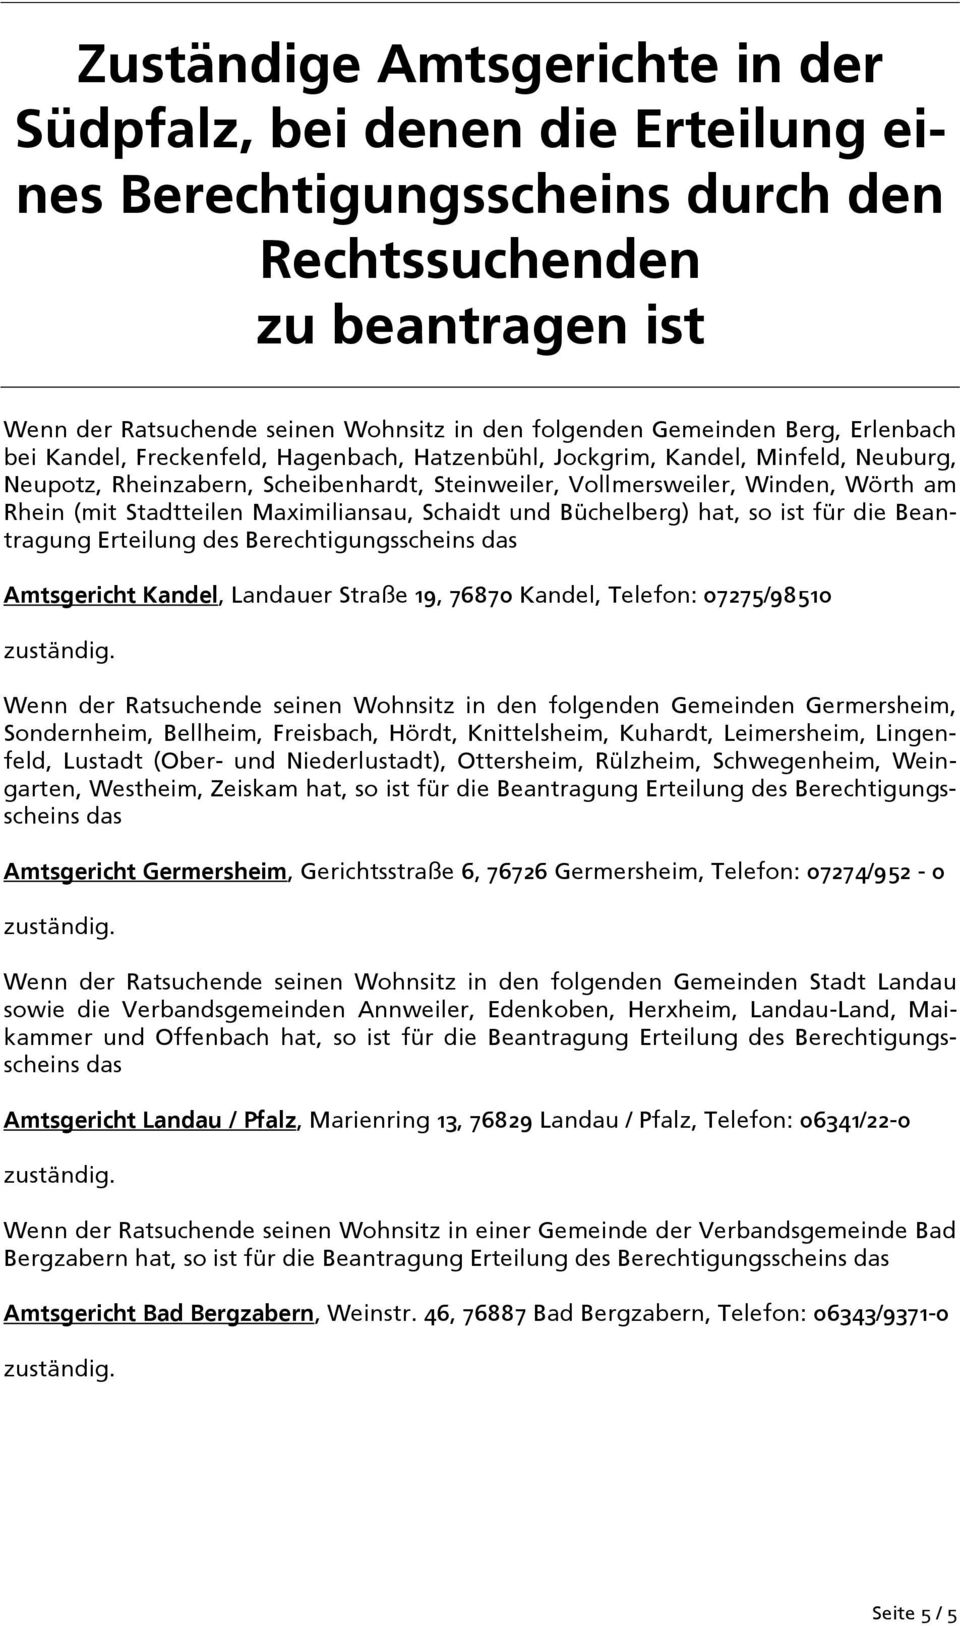 Stadtteilen Maximiliansau, Schaidt und Büchelberg) hat, so ist für die Beantragung Erteilung des Berechtigungsscheins das Amtsgericht Kandel, Landauer Straße 19, 76870 Kandel, Telefon: 07275/98510